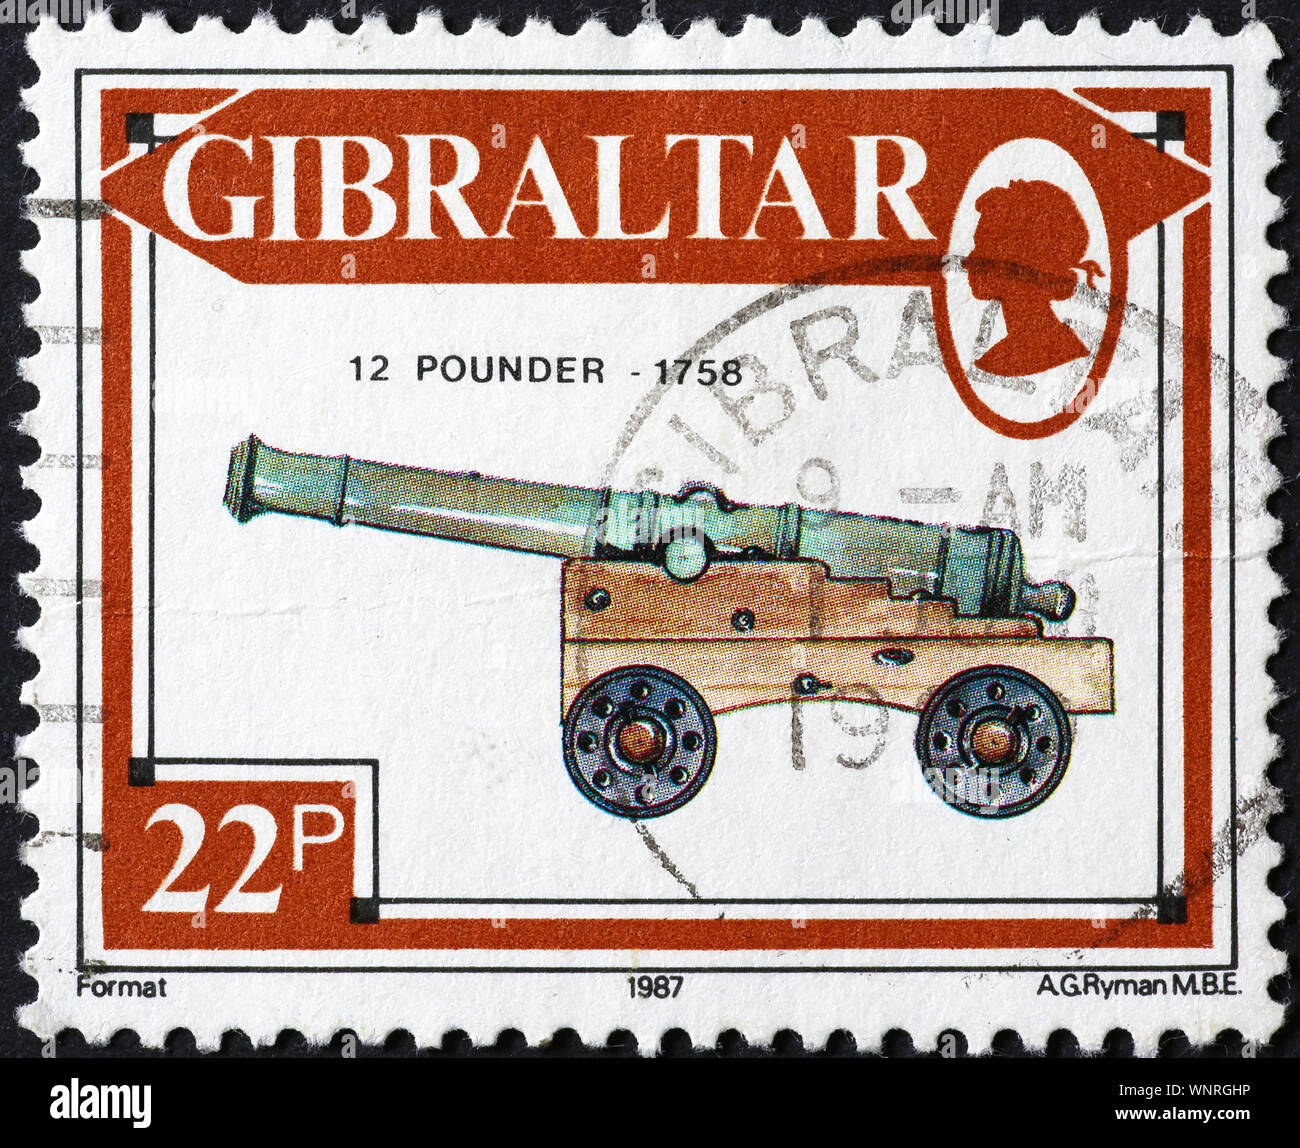 Armes à feu anciennes sur timbre-poste de Gibraltar Banque D'Images